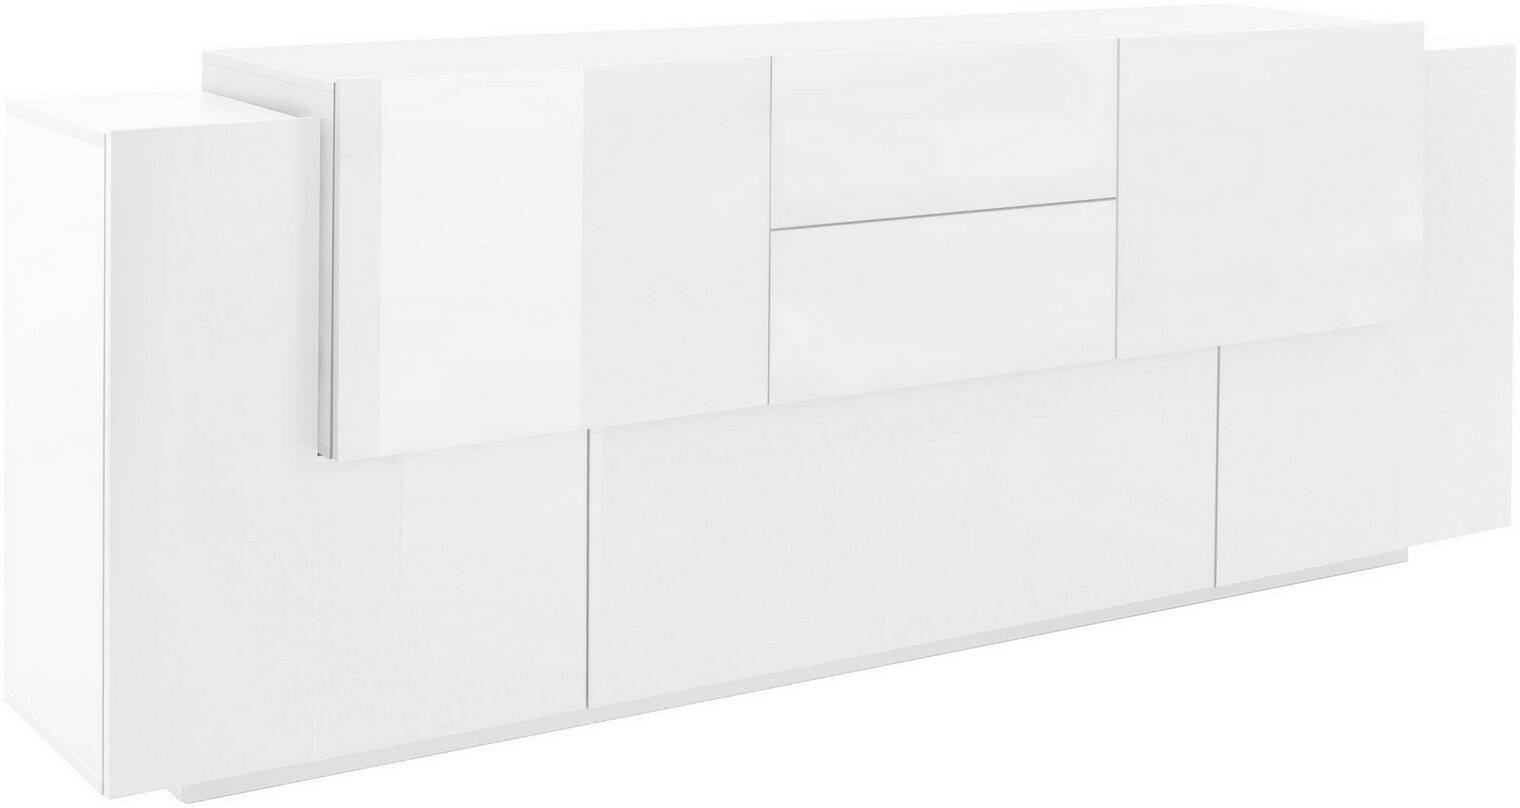 Dmora Kommode Cesare, Küchen-Sideboard mit 5 Türen und 2 Schubladen, Wohnzimmer-Buffet, Küchen-Sideboard, cm 220x45h86, glänzend und matt weiß